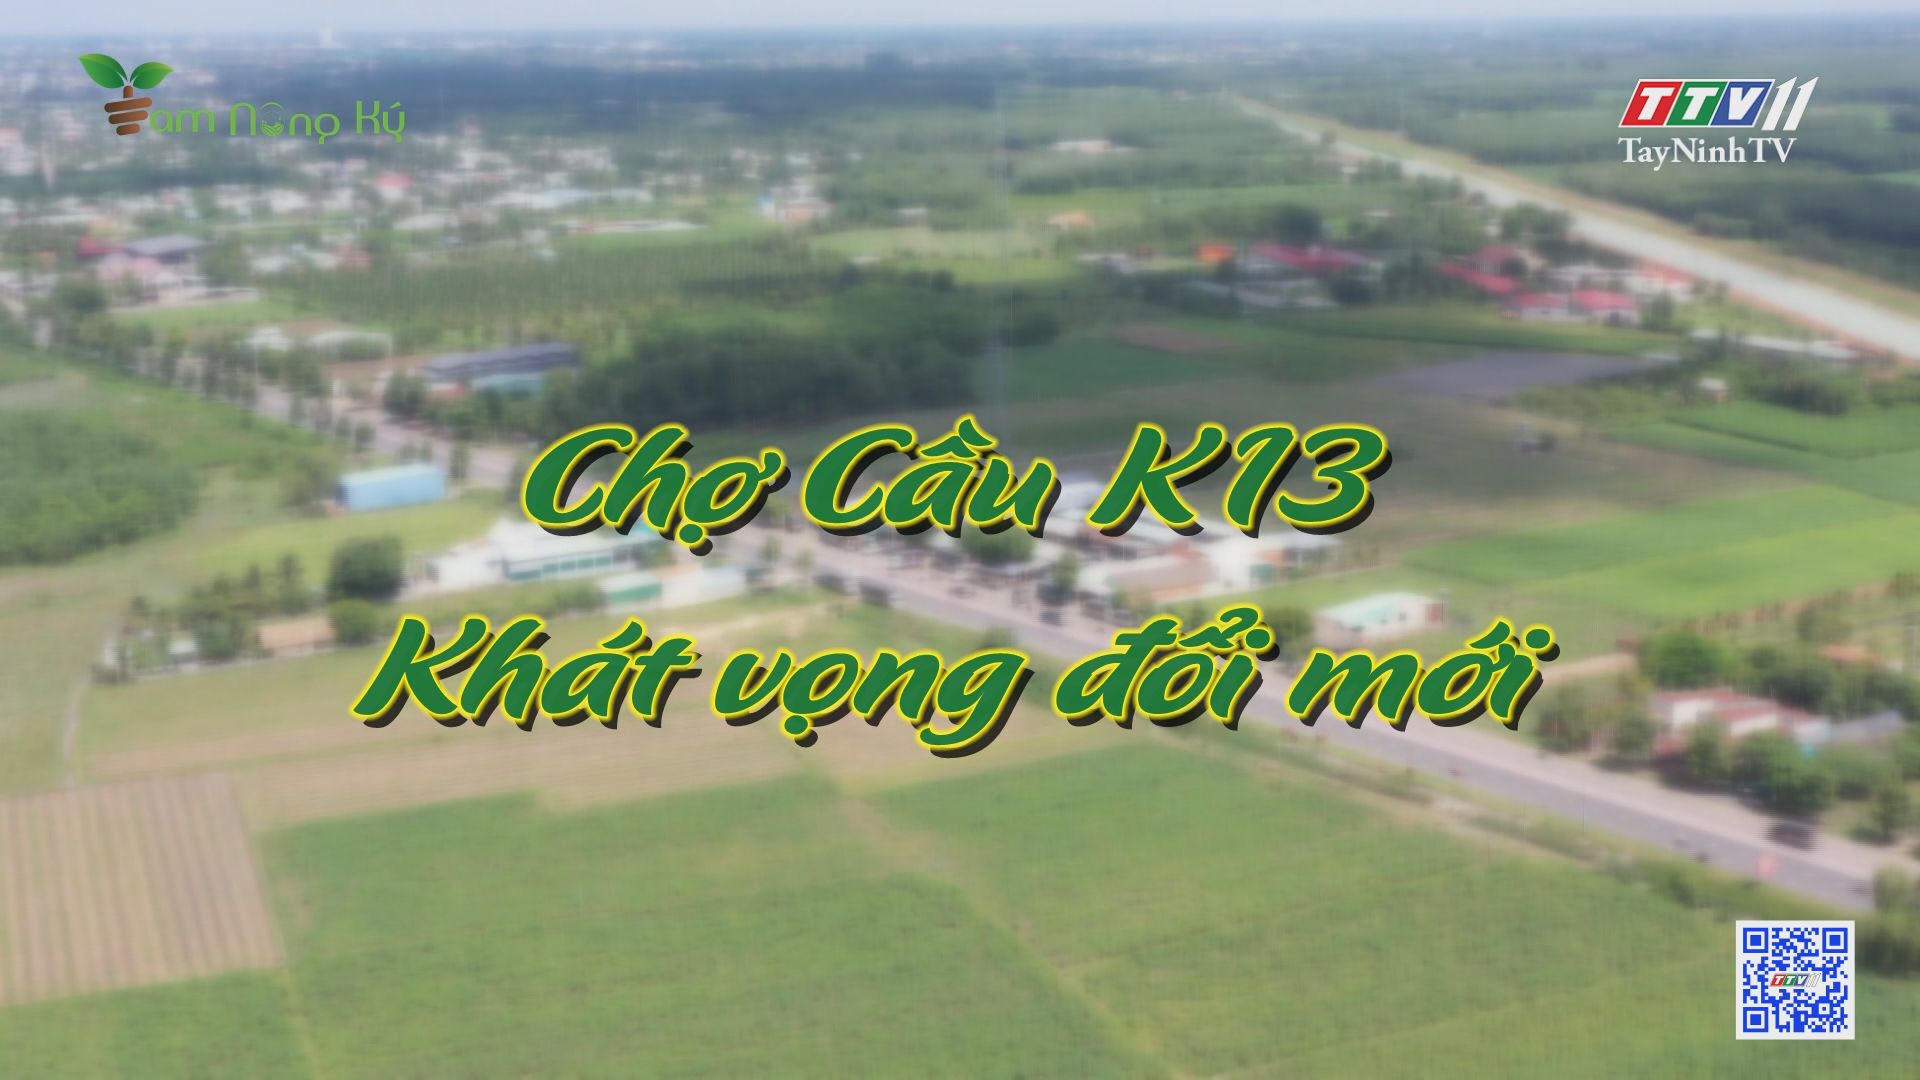 Chợ cầu K13 - Khát vọng đổi mới | Tam nông ký | TayNinhTV